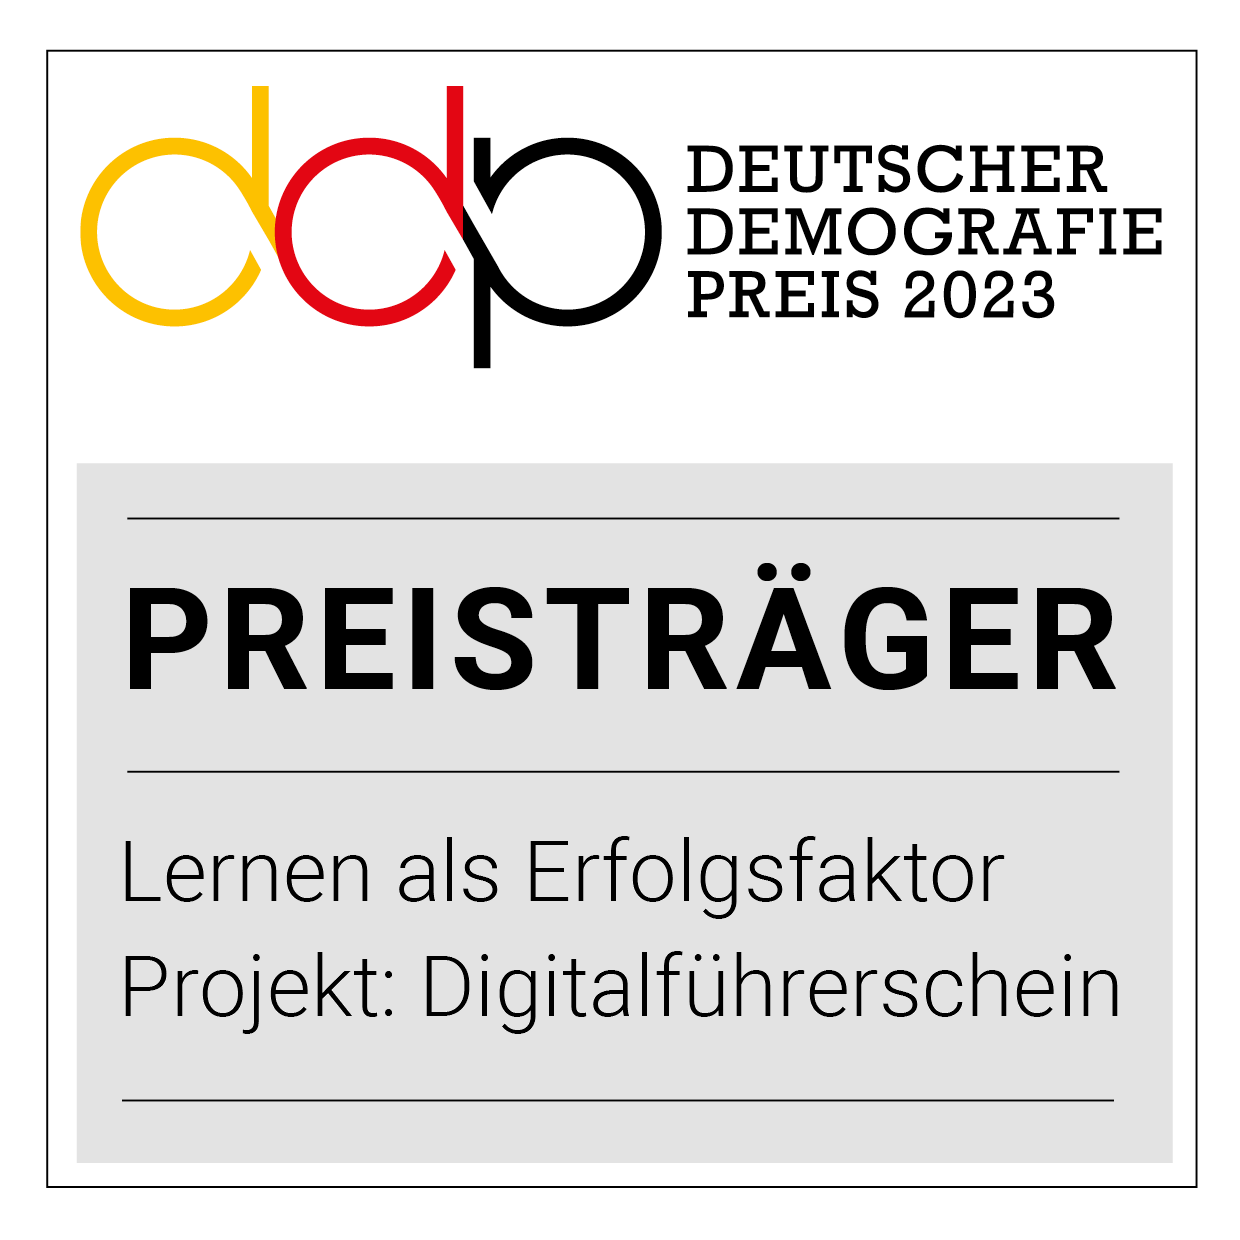 Deutscher Demografiepreis 2023 Preisträger